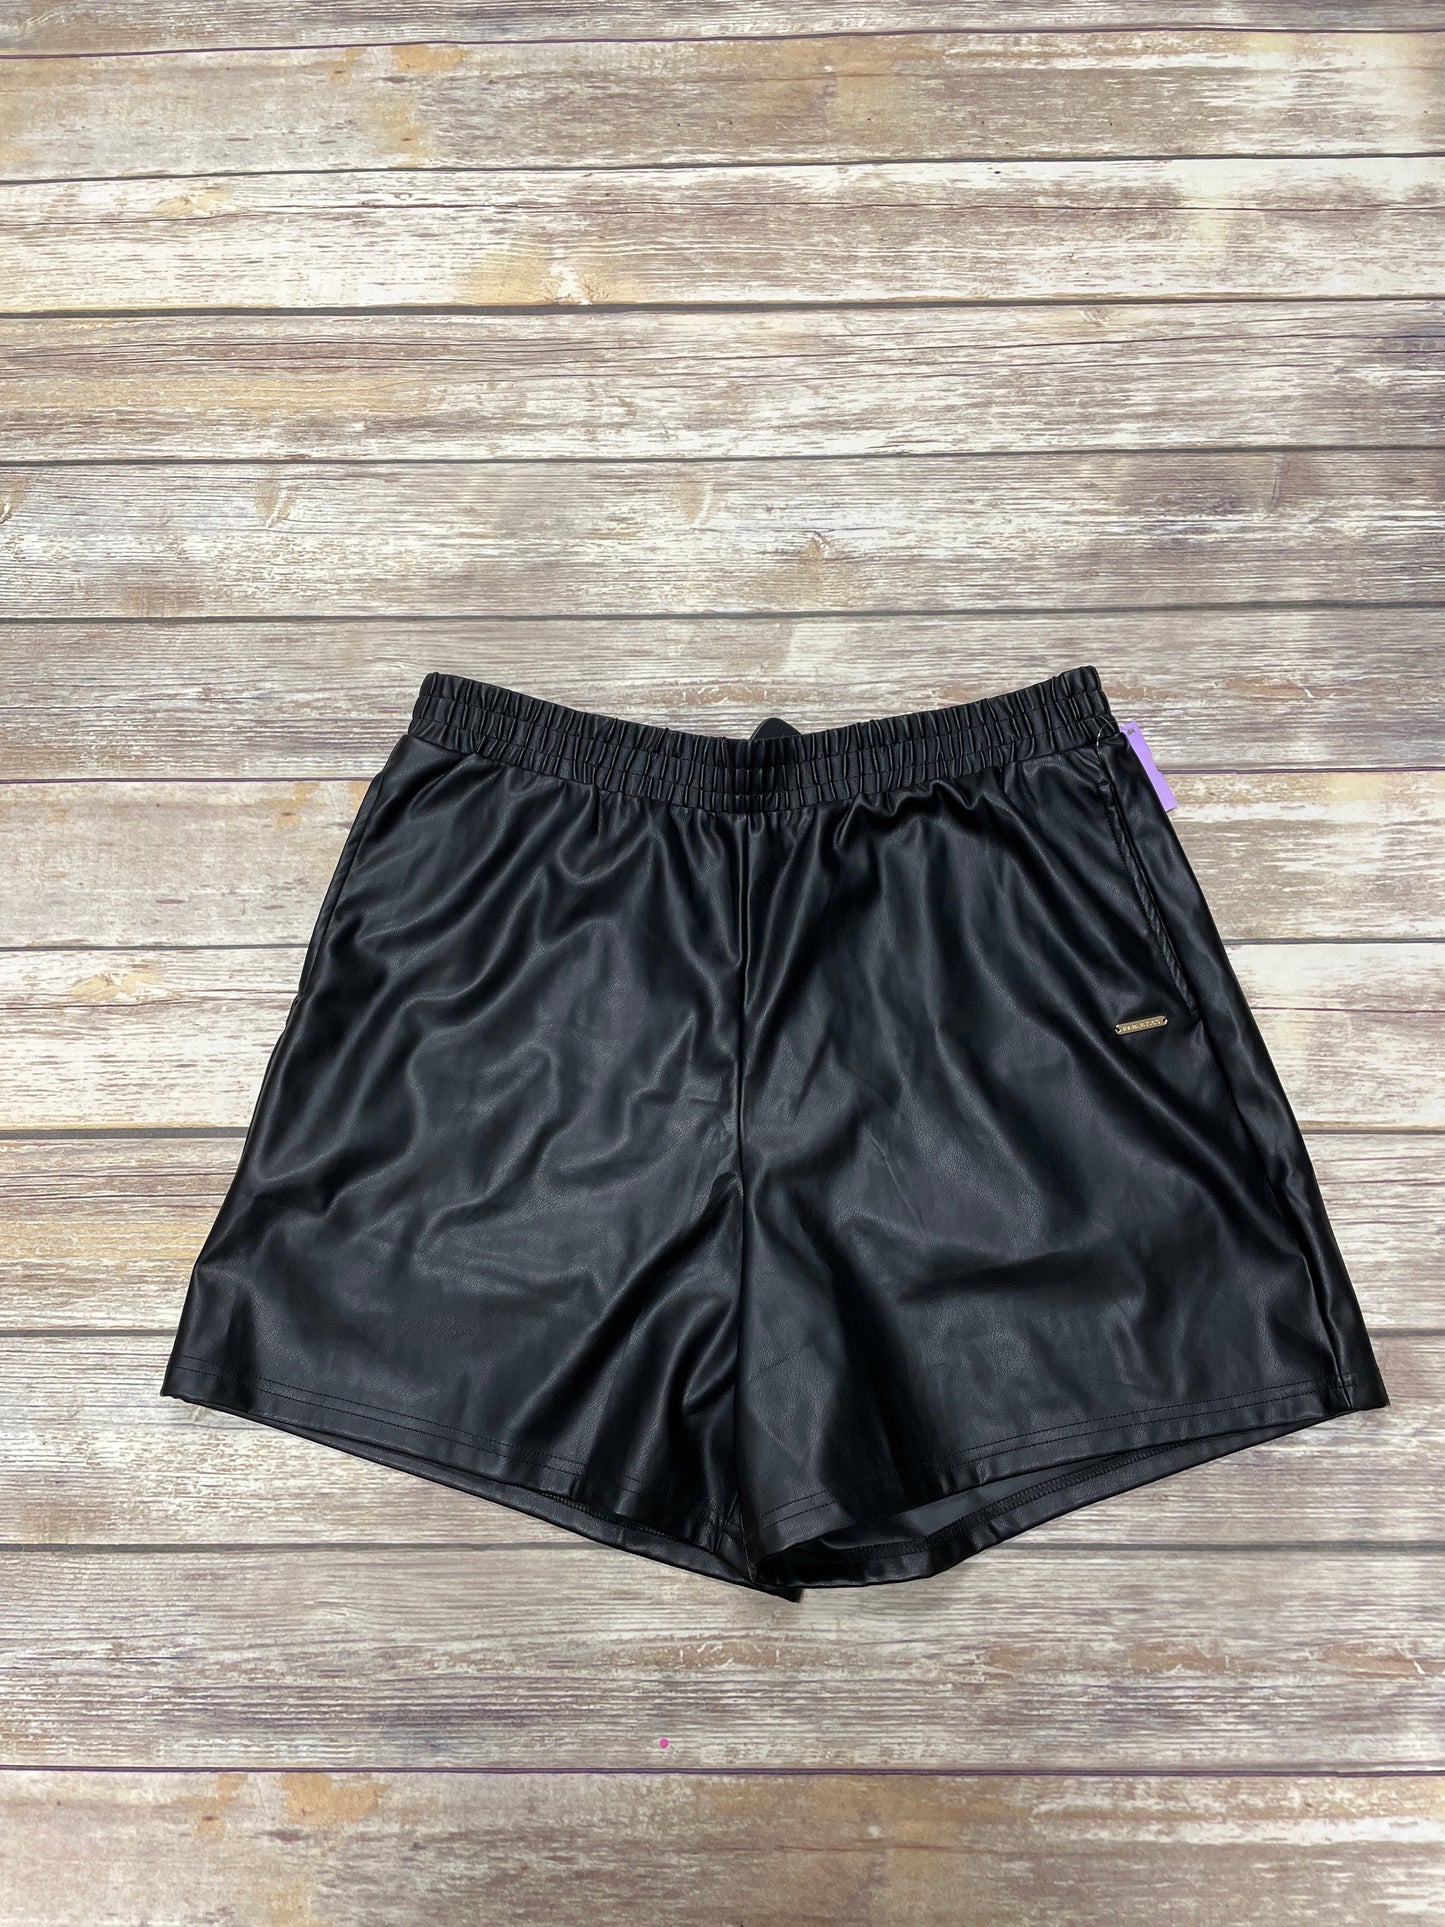 Black Shorts Fabletics, Size Xxl